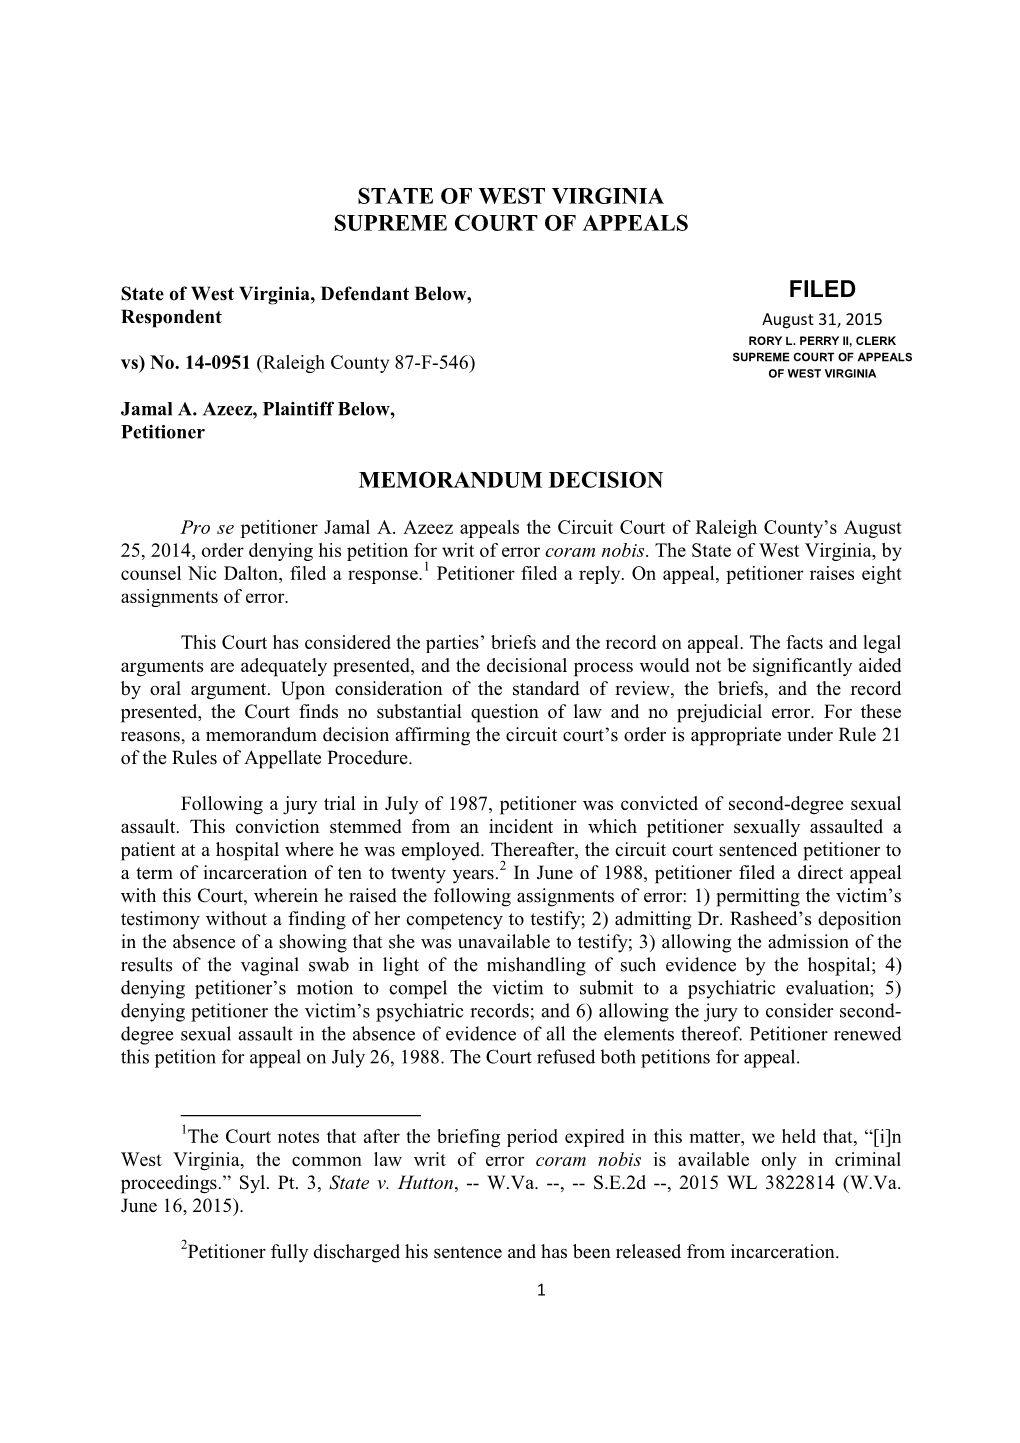 Memorandum Decision, State of West Virginia V. Jaml A. Azeez, No. 14-0951